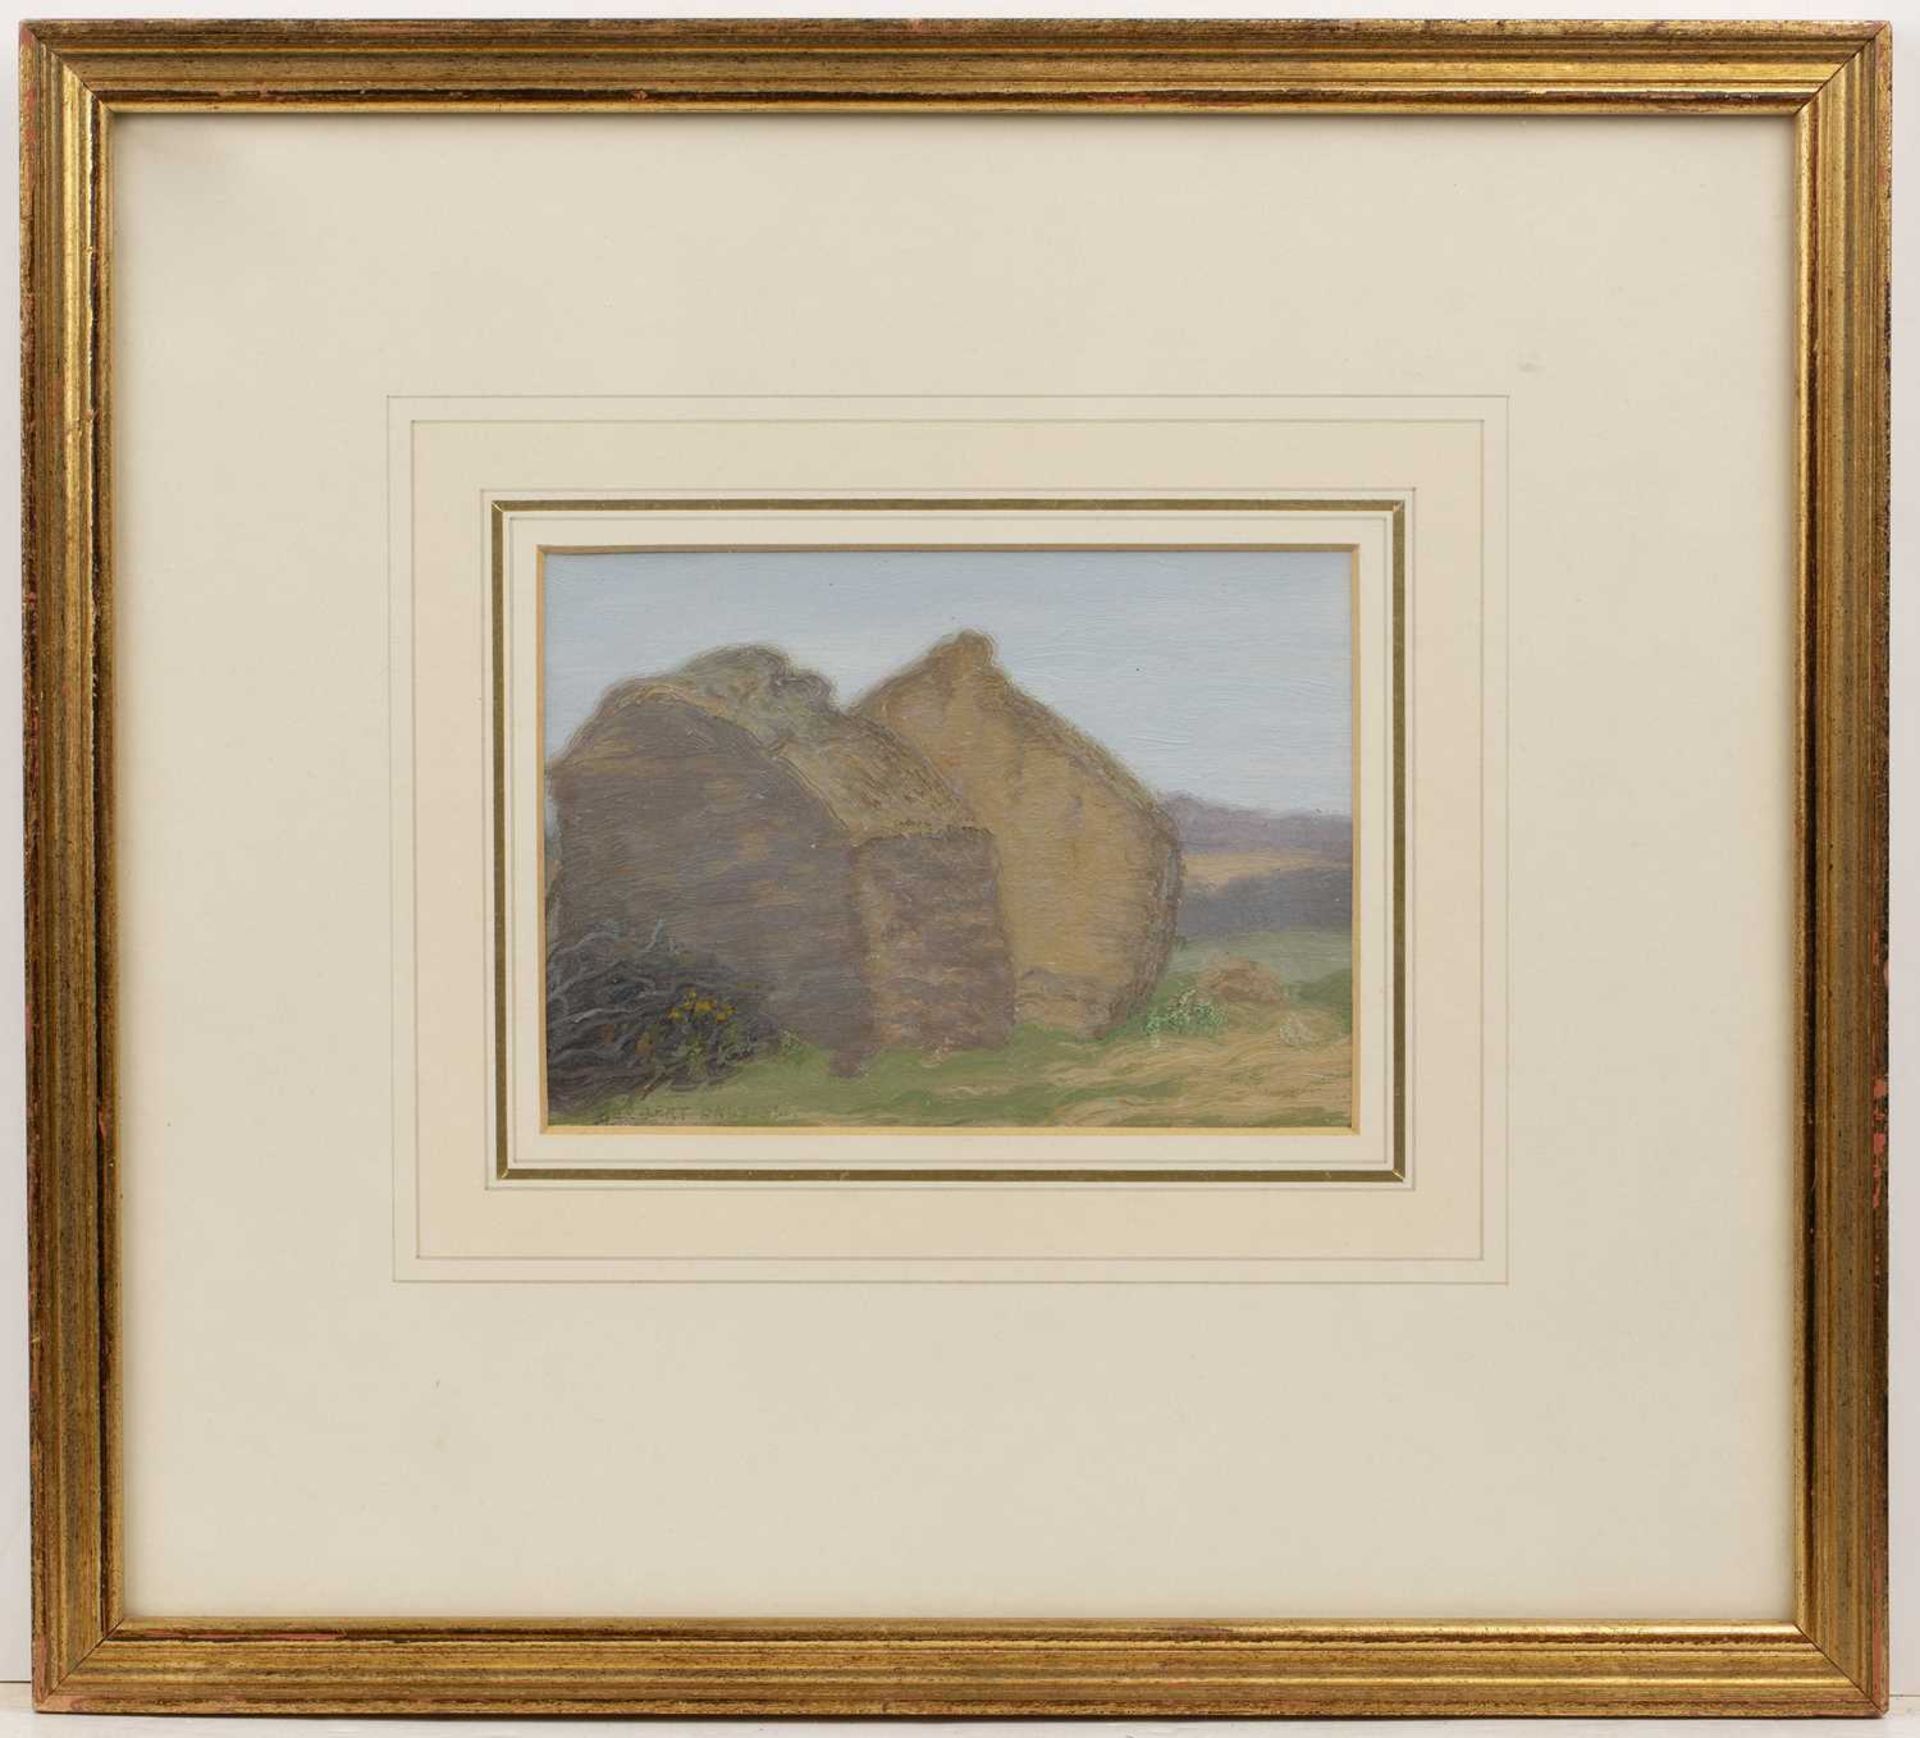 Herbert Dalziel ( 1858-1941) Landscape with barns, signed, oil on board, 11 x 15cm - Image 2 of 3